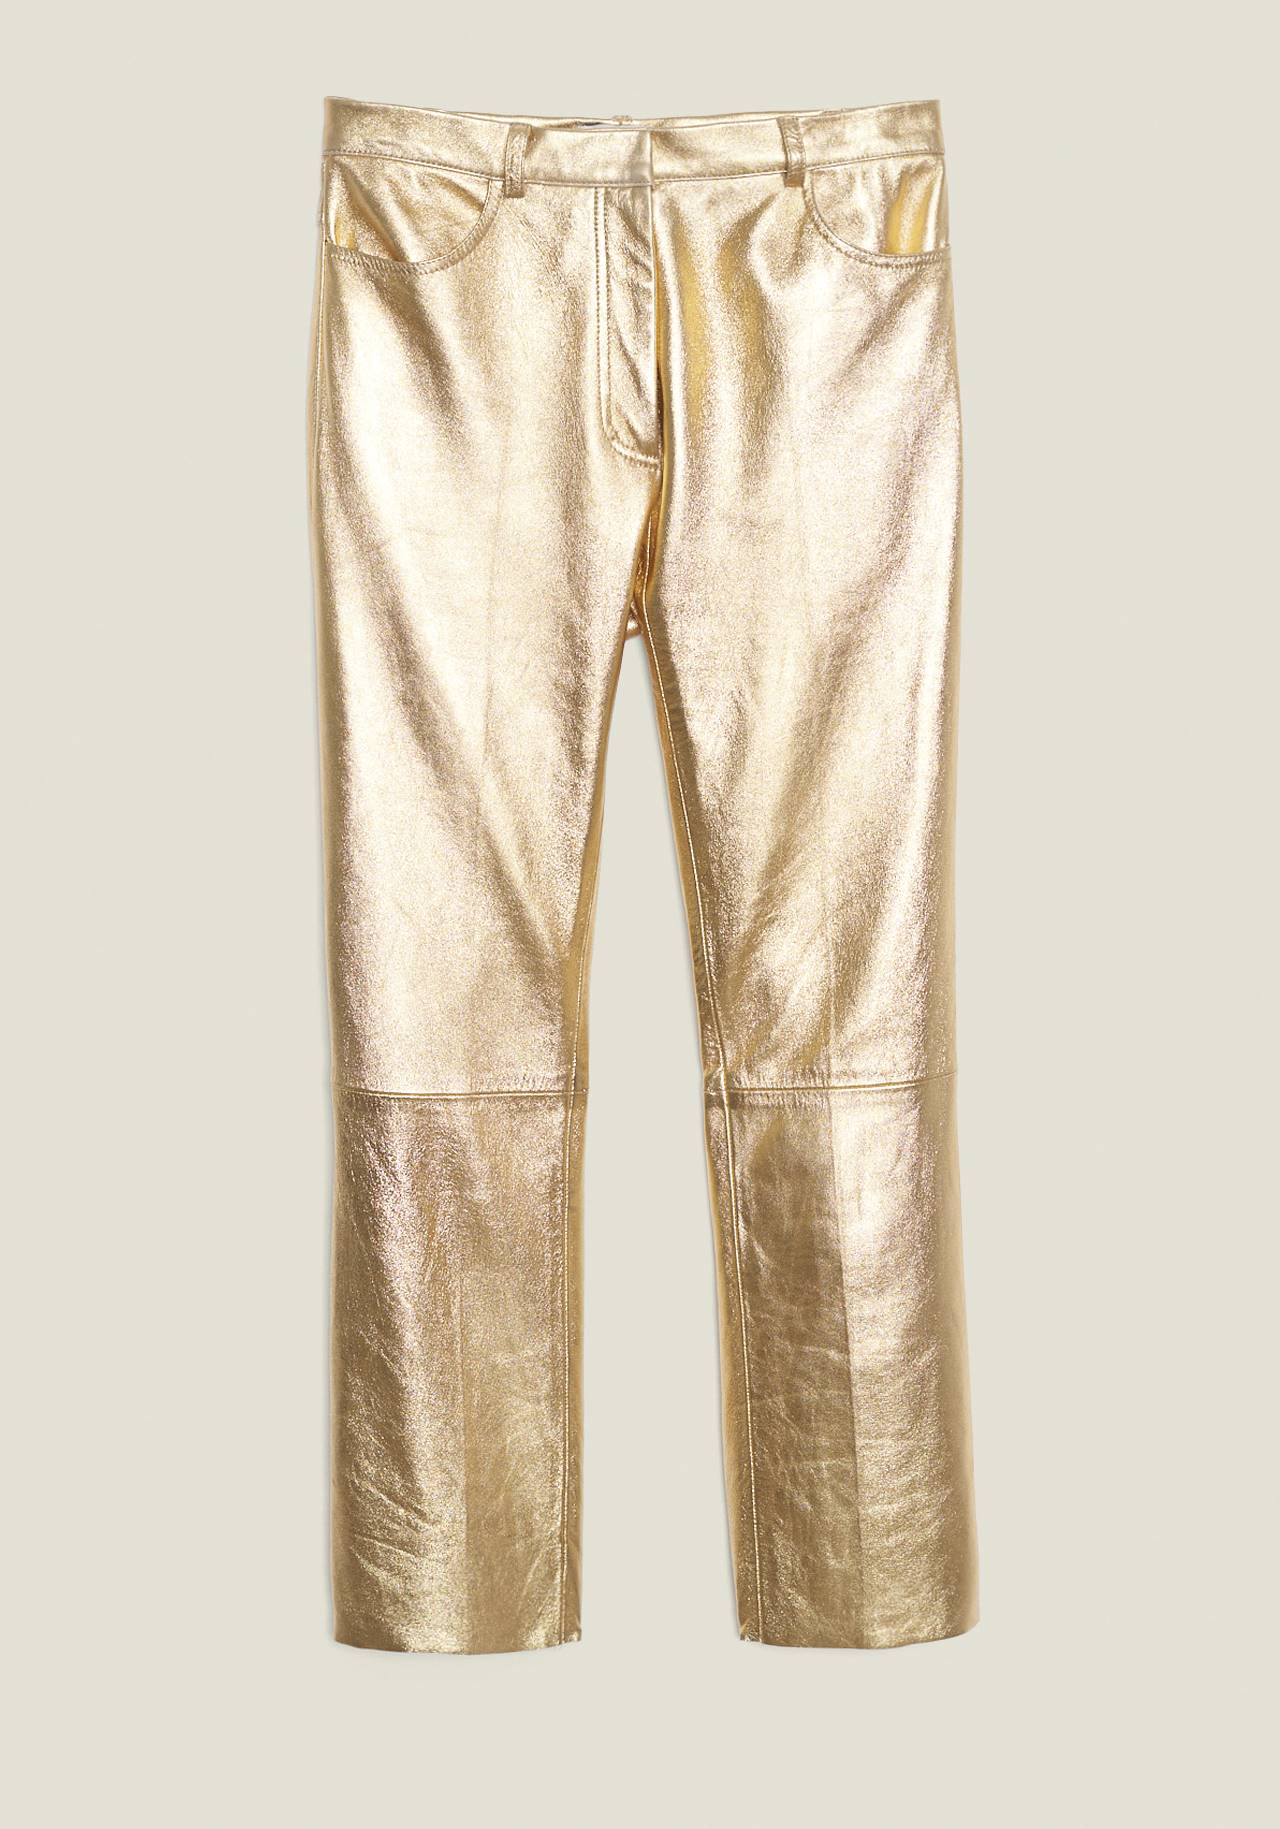 pantalón dorado Sandro 545 euros